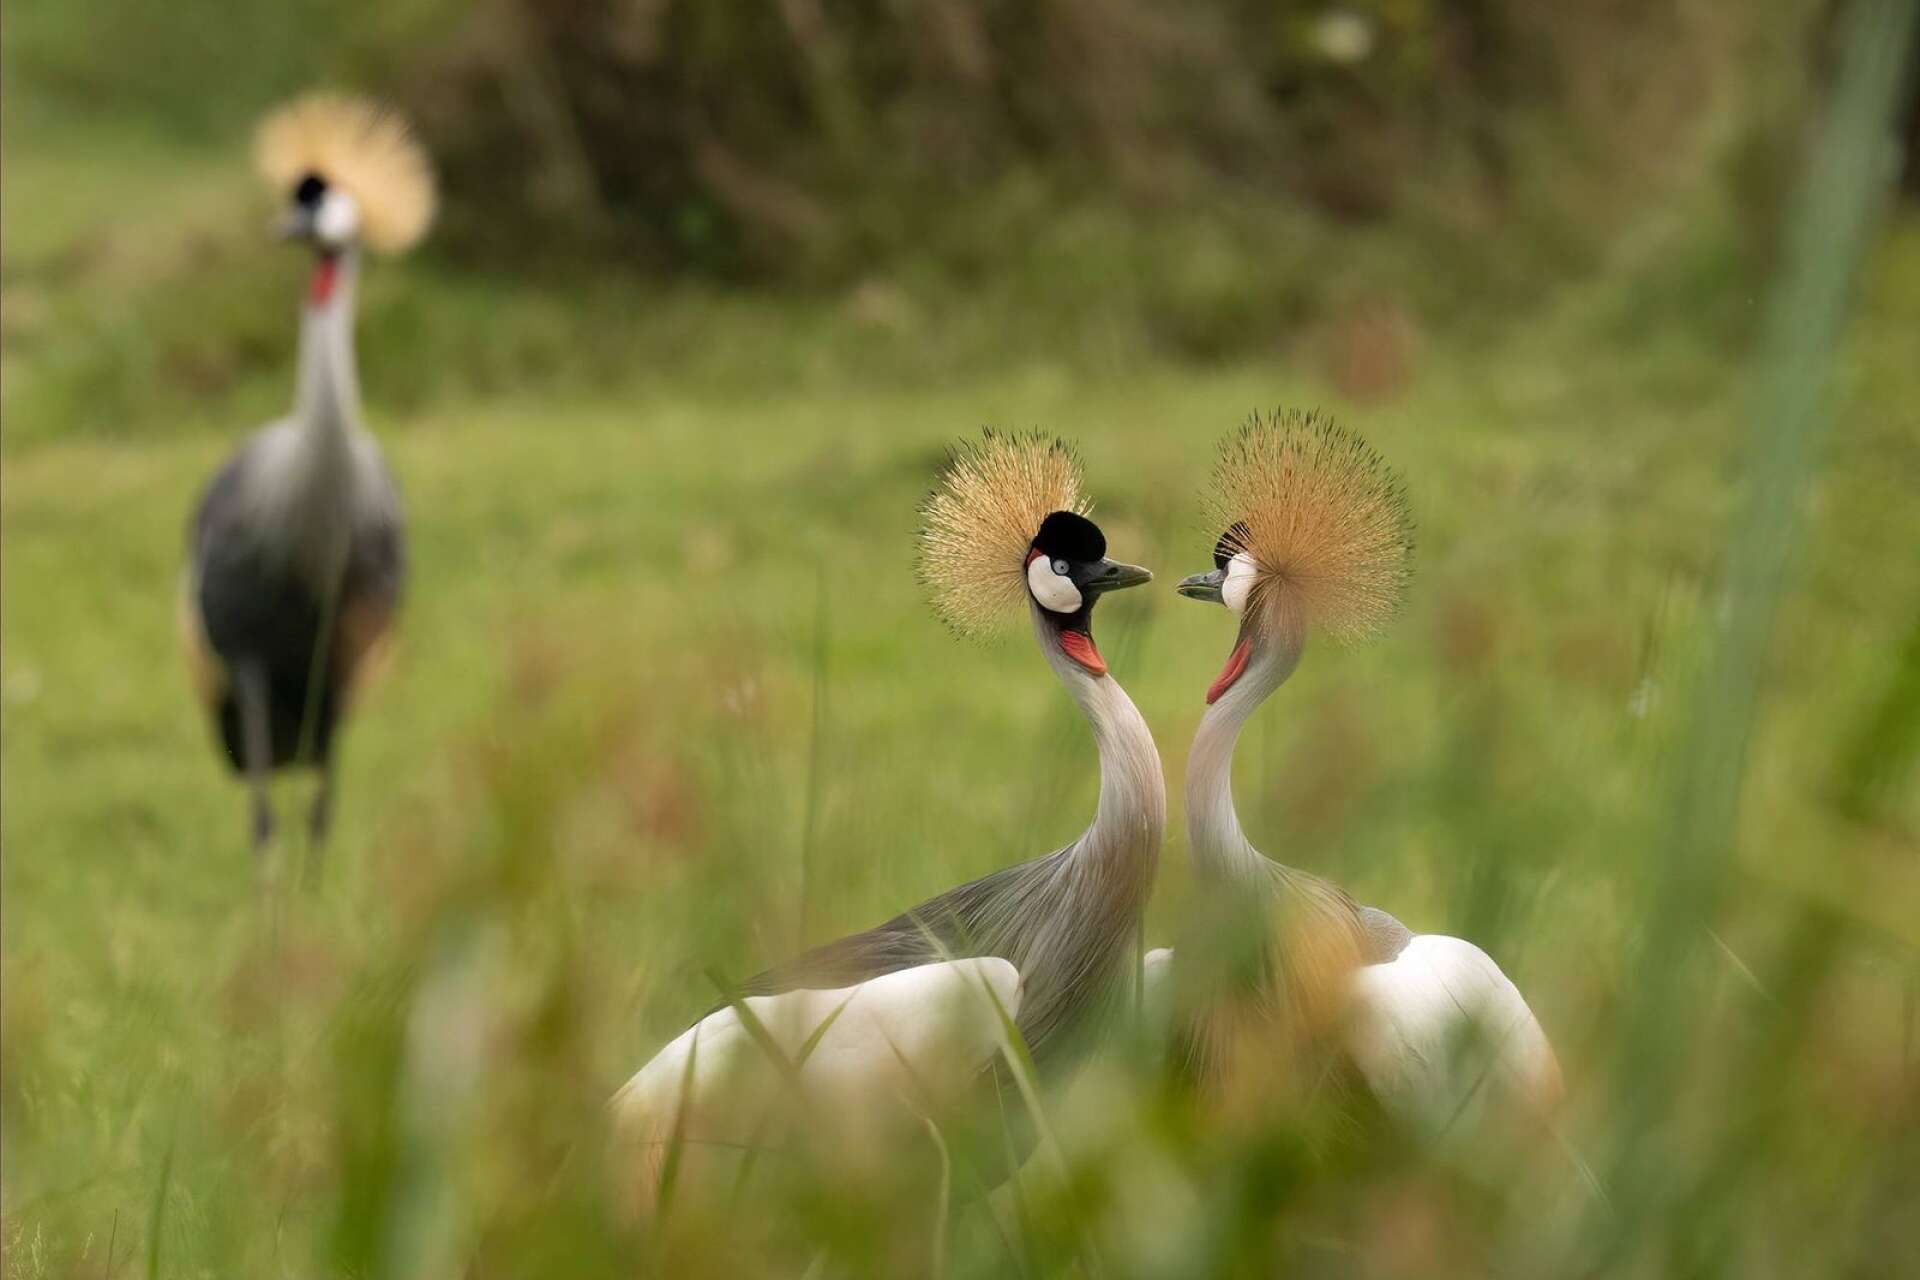 Krontranan är Ugandas nationalfågel och finns med som symbol mitt i nationsflaggan. Kent ttckte att det var bland de vackraste fåglar han sett.